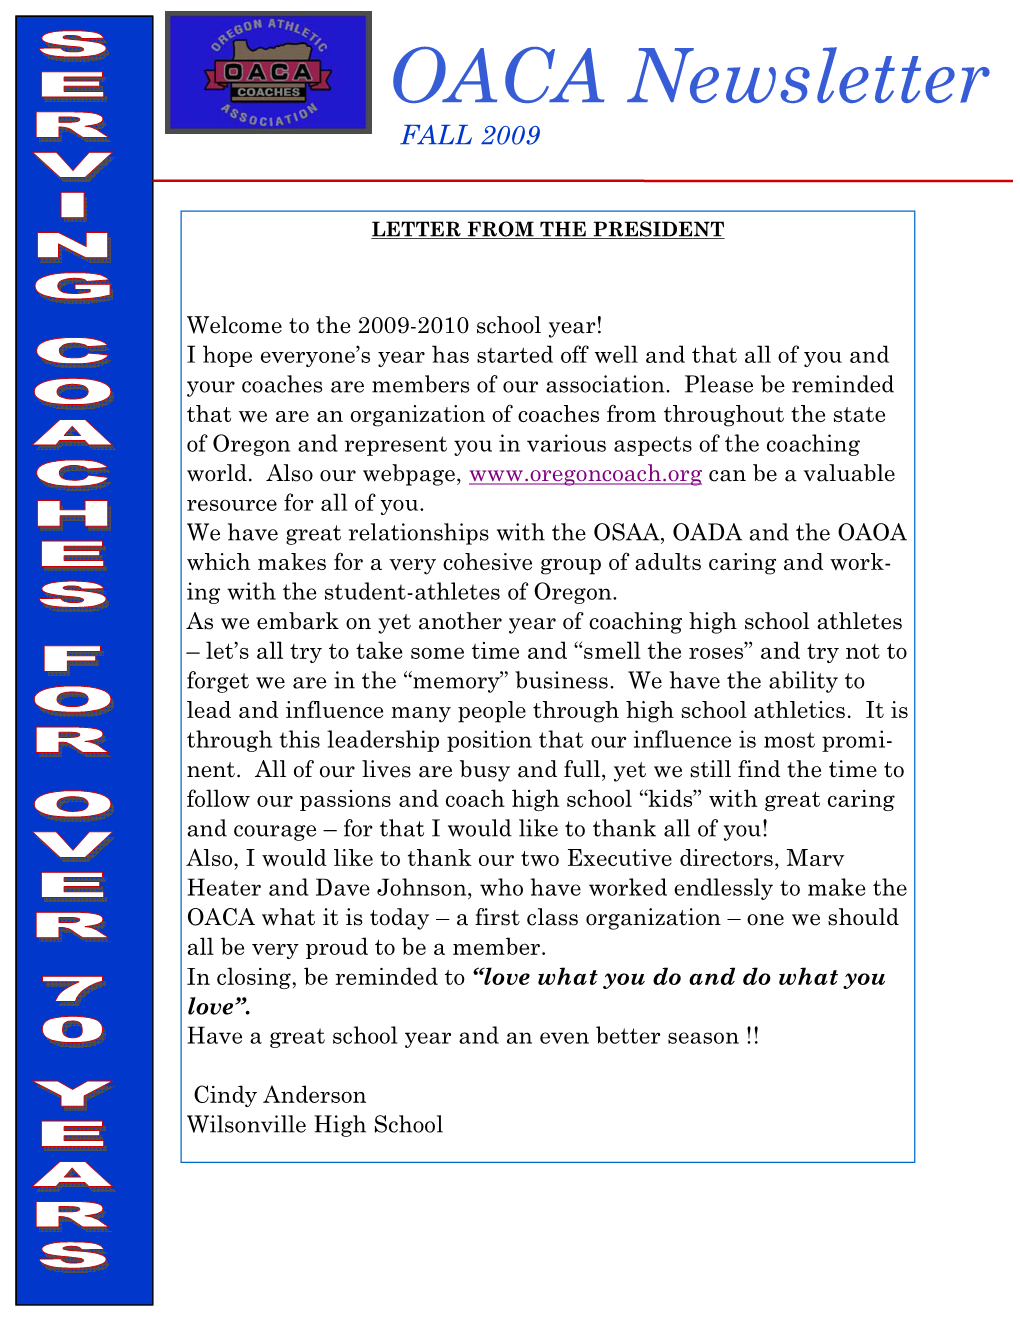 2009 Fall Newsletter